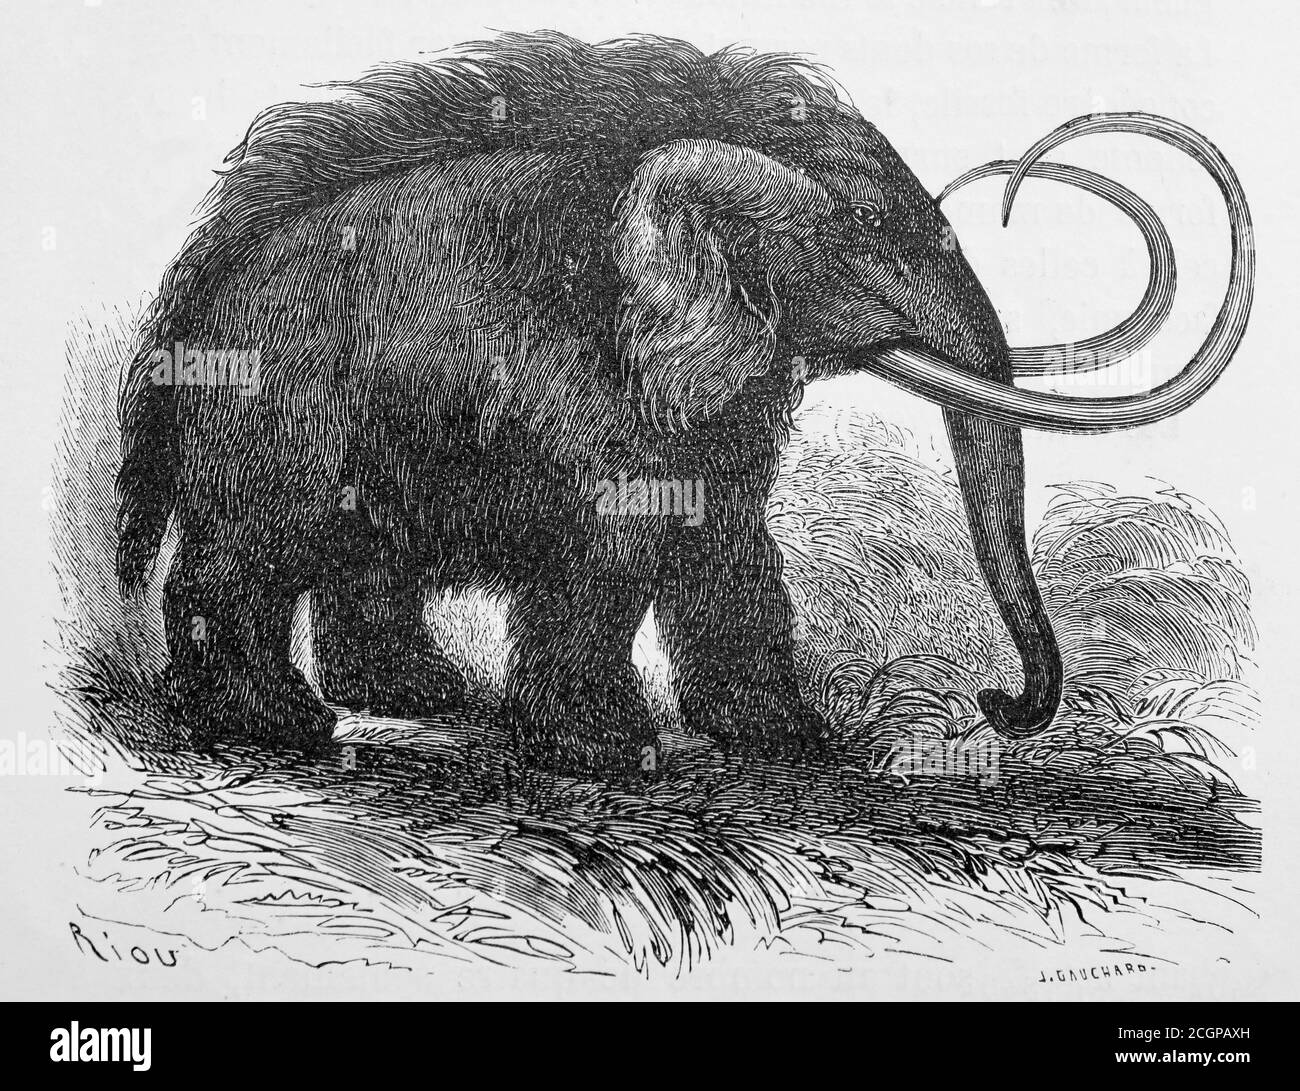 Illustrazione di un mammut vagabondo (Elephas primigenius, ora Mammuthus primigenius), da The World Before the Deluge di Luigi Figuier, 1867 di Eduard Riou Foto Stock